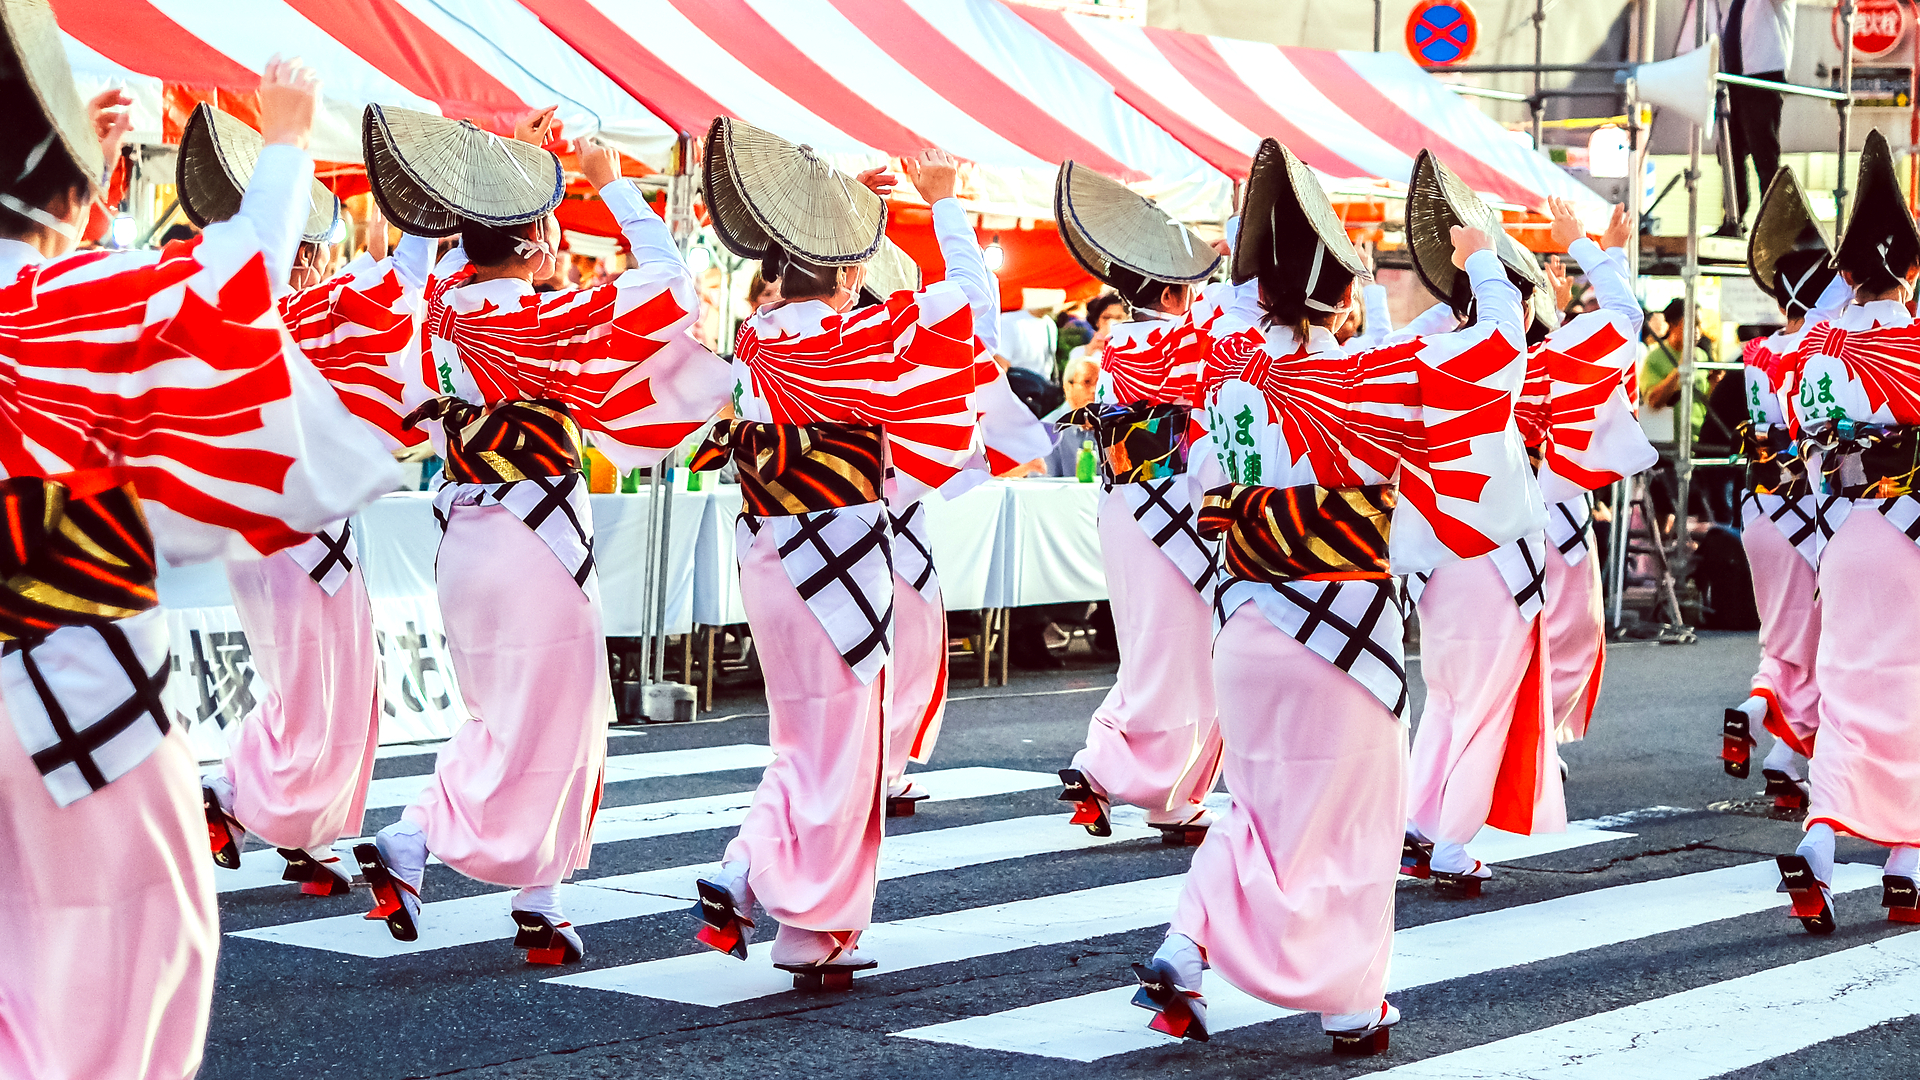 日本文化を再発見。一度は行ってみたい「伝統的な夏祭り」ランキング - TRiP EDiTOR